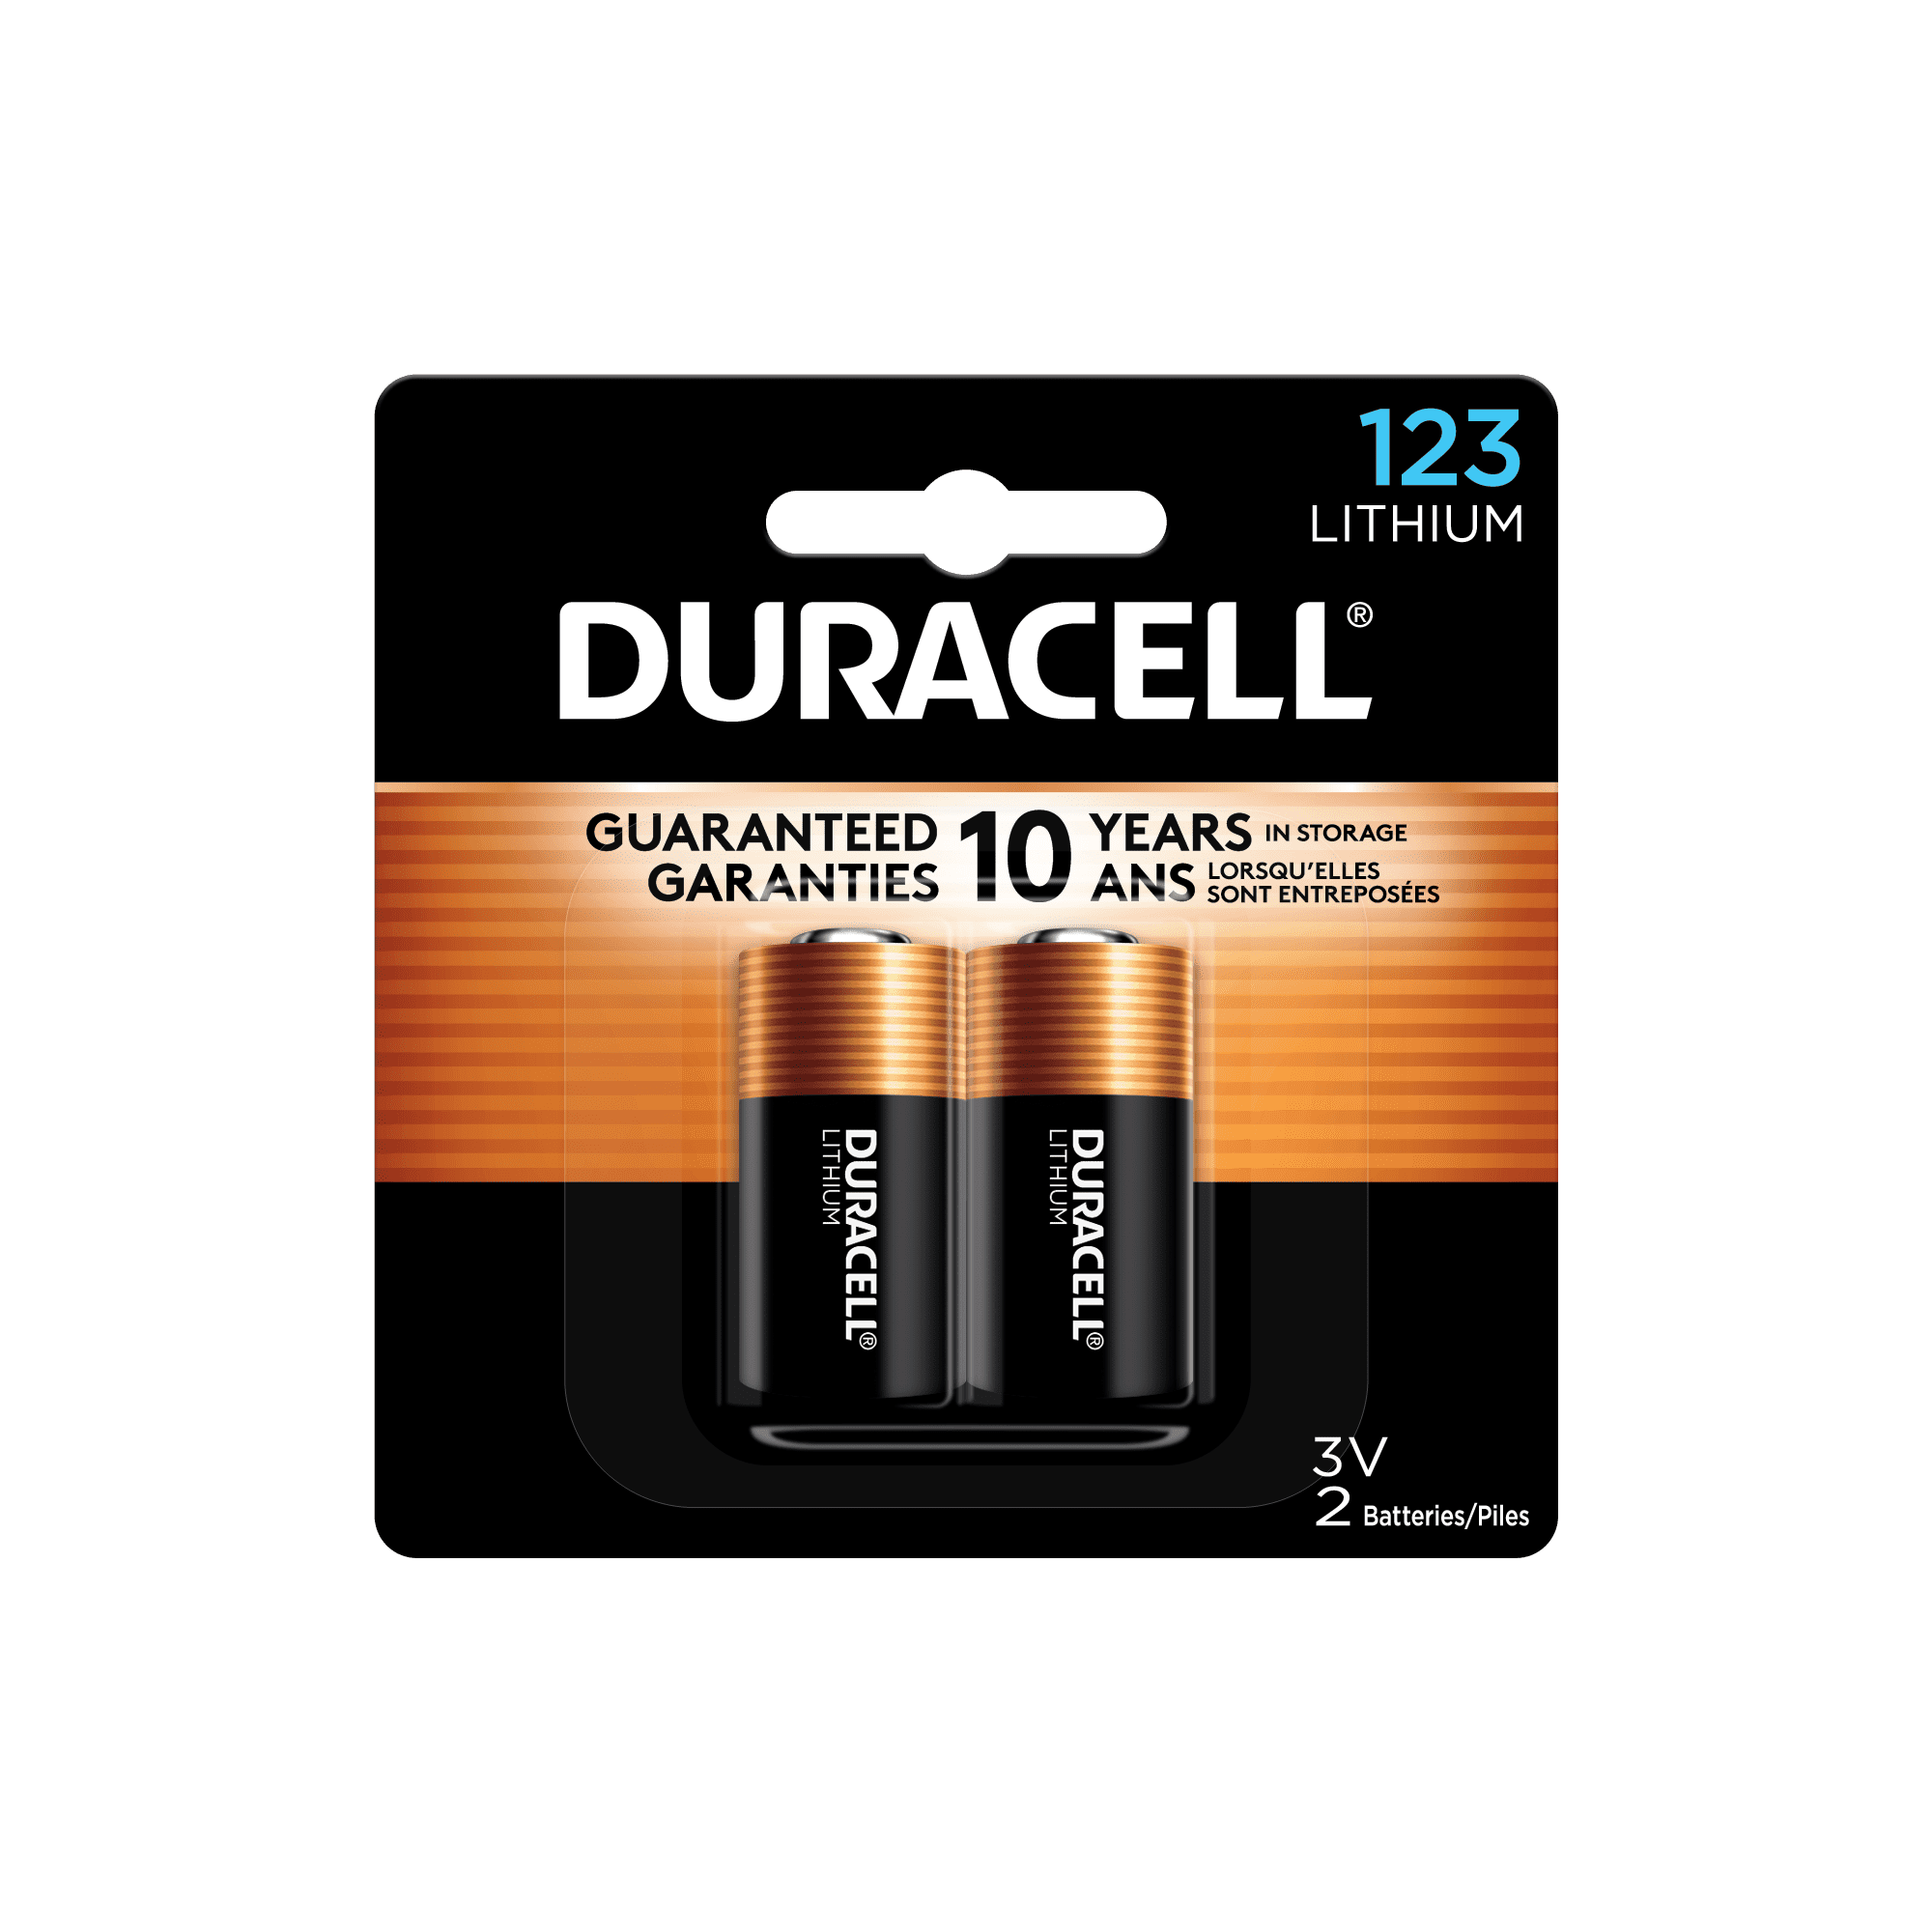 schaak Vooraf fictie Duracell 123 High Performance 3V Lithium Battery, 2 Pack - Walmart.com